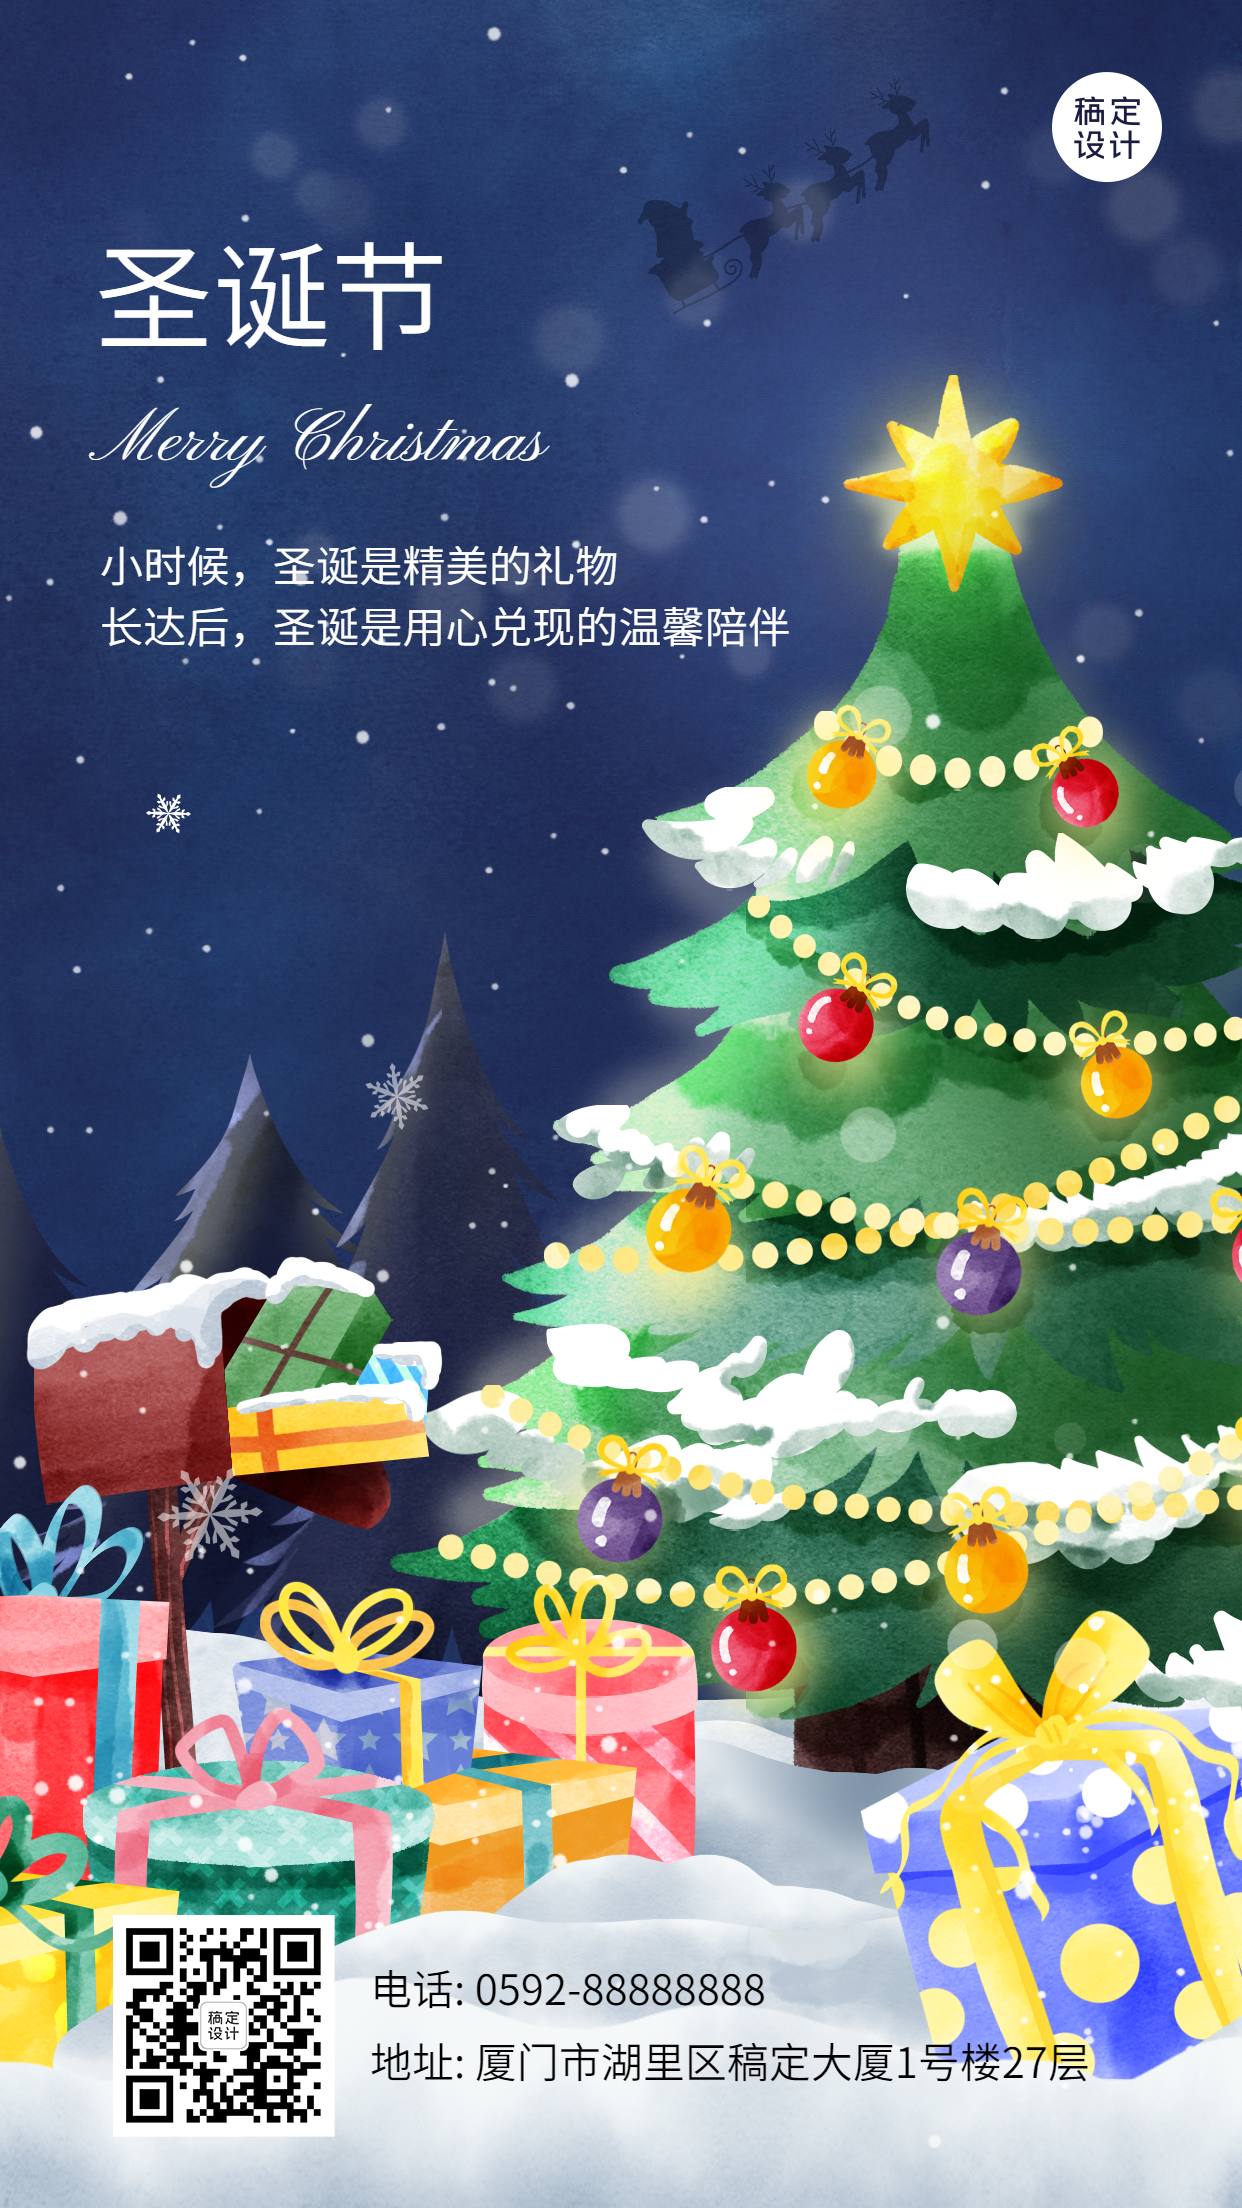 圣诞节祝福圣诞树礼盒插画手机海报预览效果